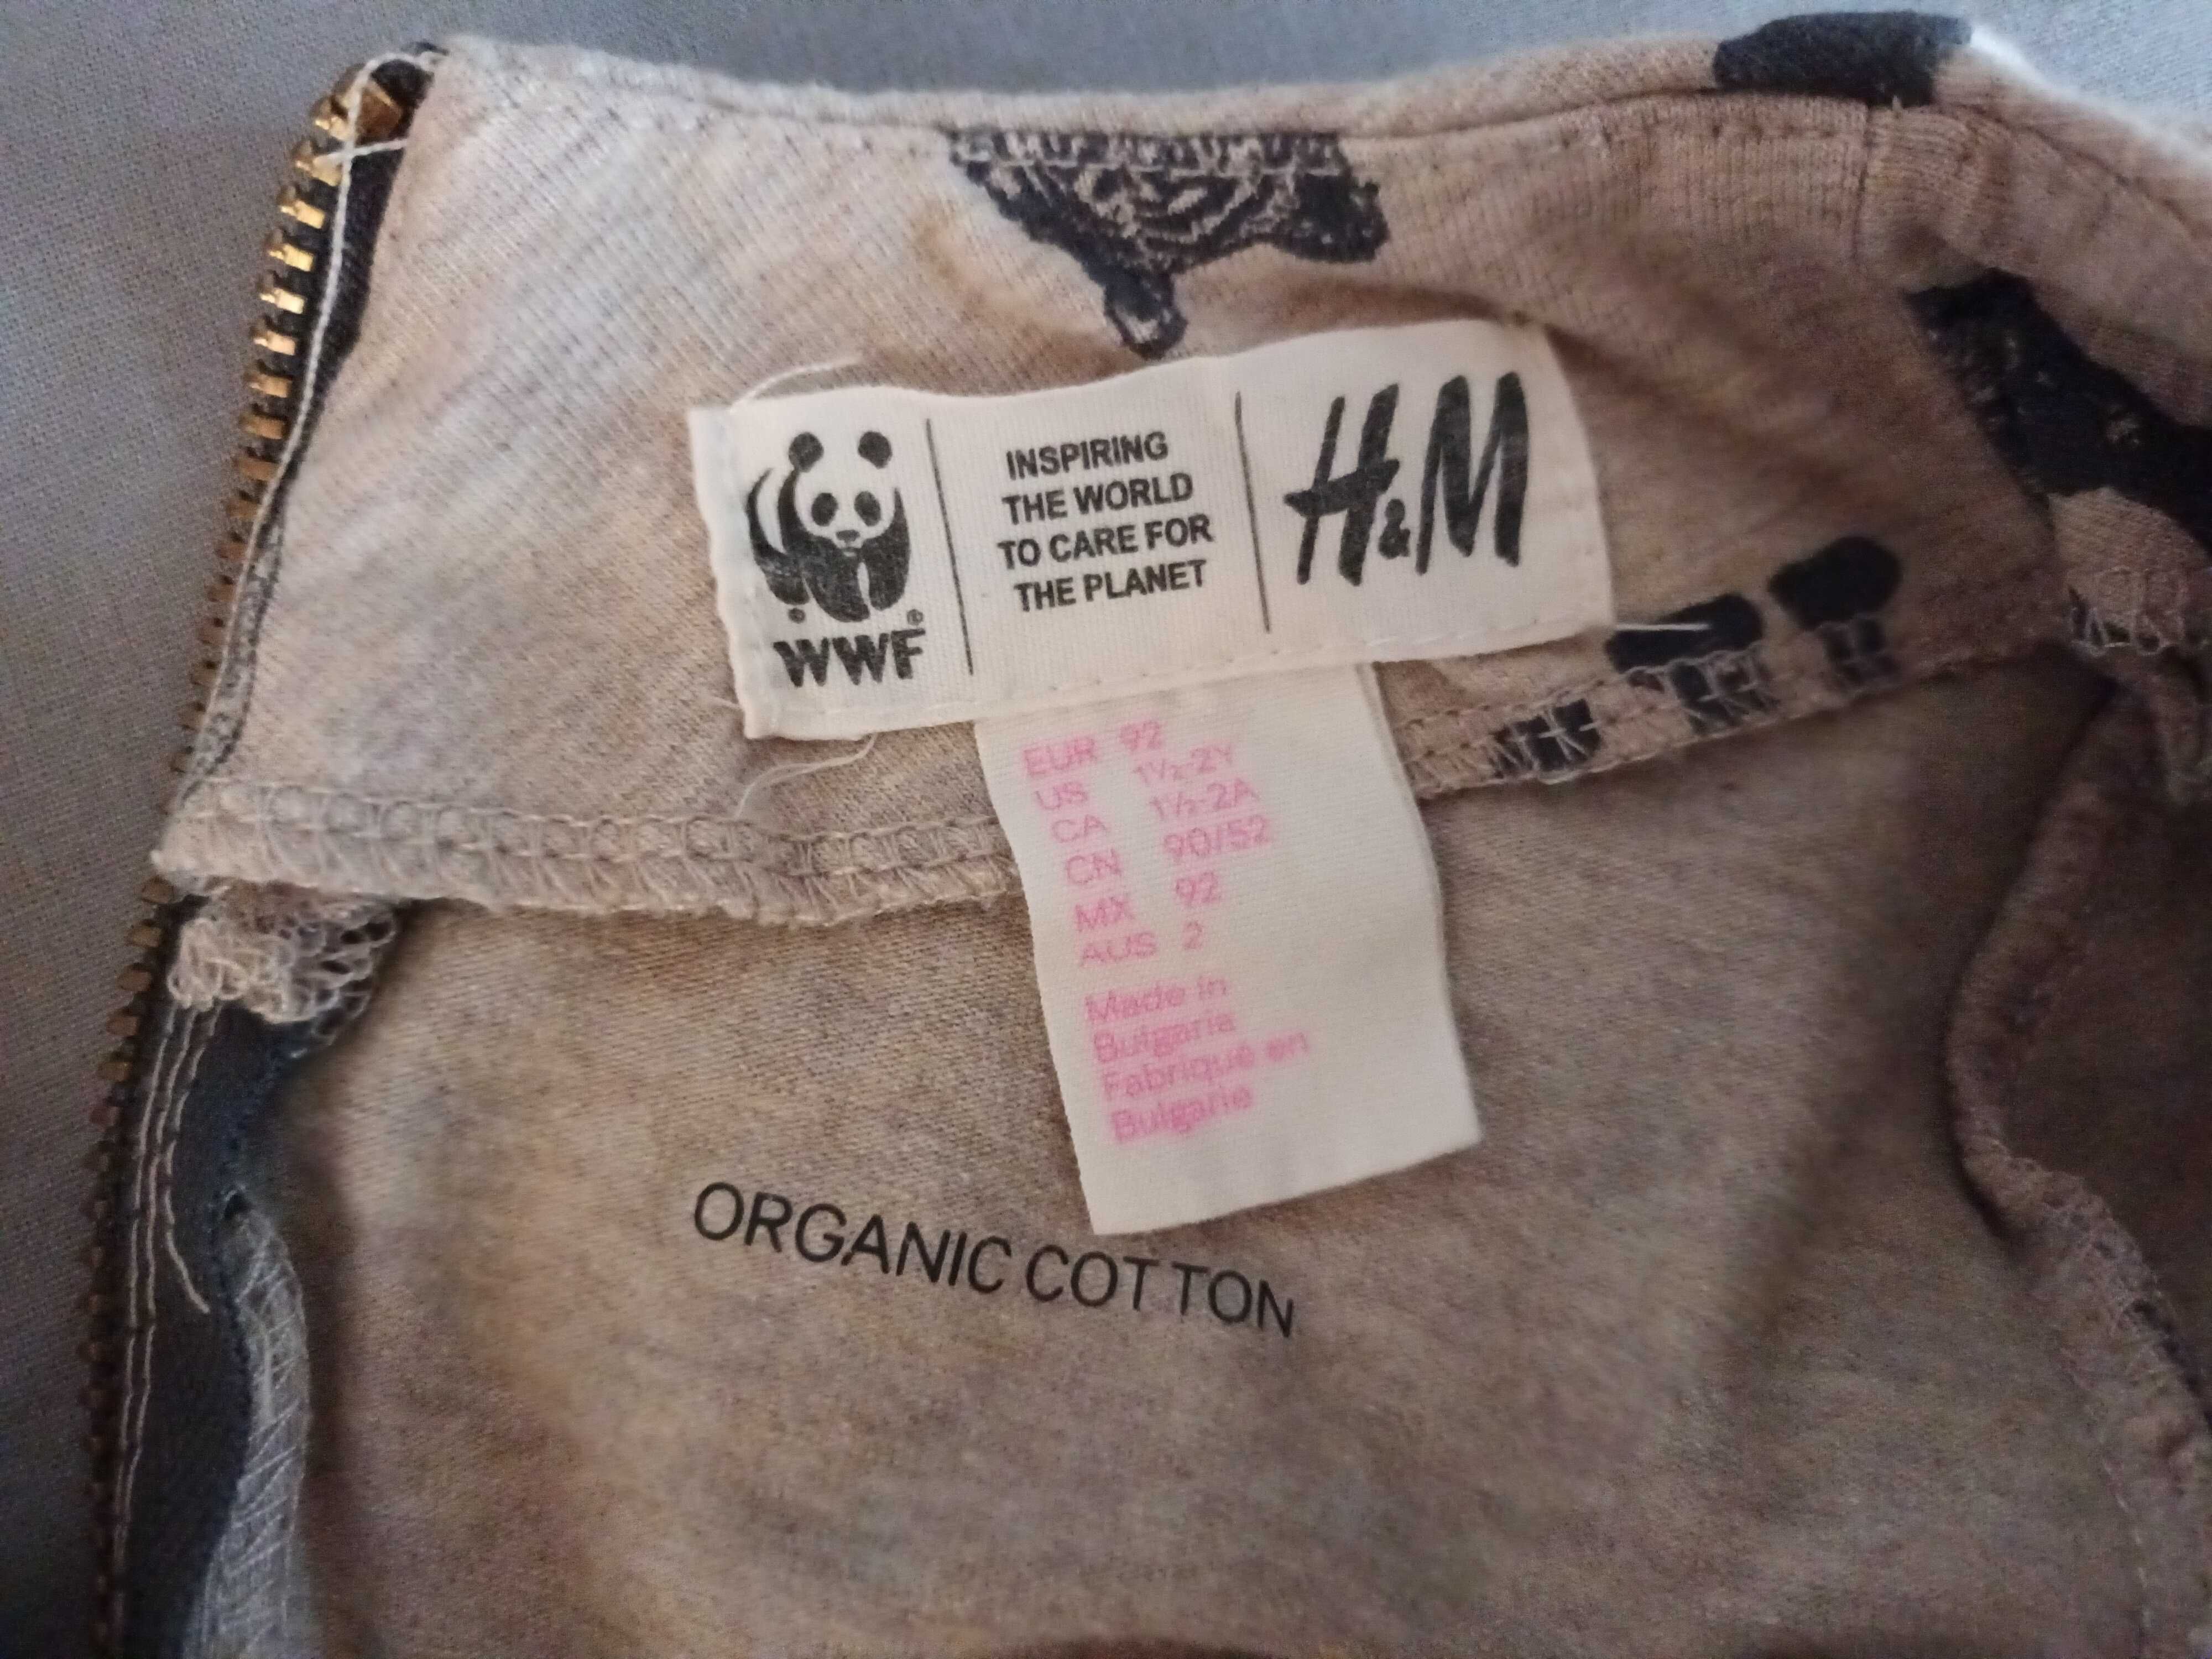 Детска рокля H&M, лимитирана серия на WWF